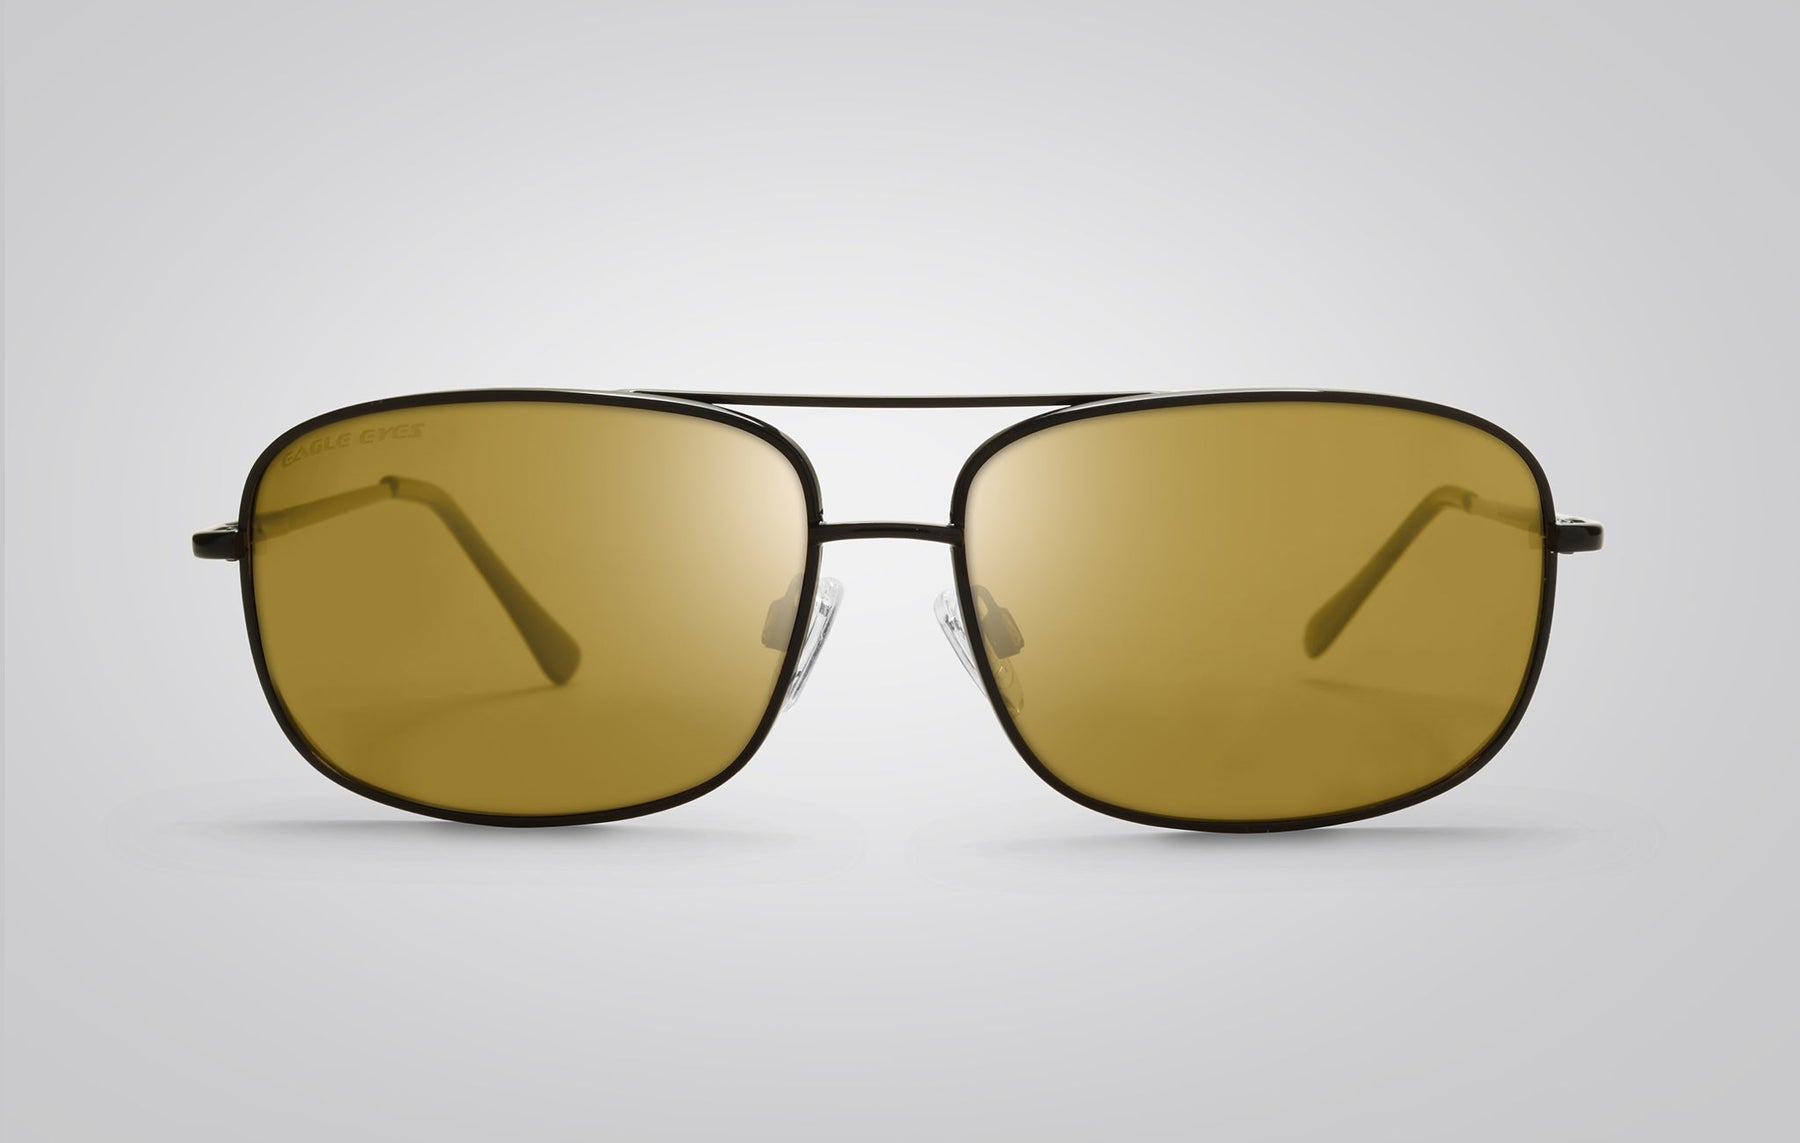 Navigator | Aviator-style Polarized Sunglasses – Eagle Eyes Optics